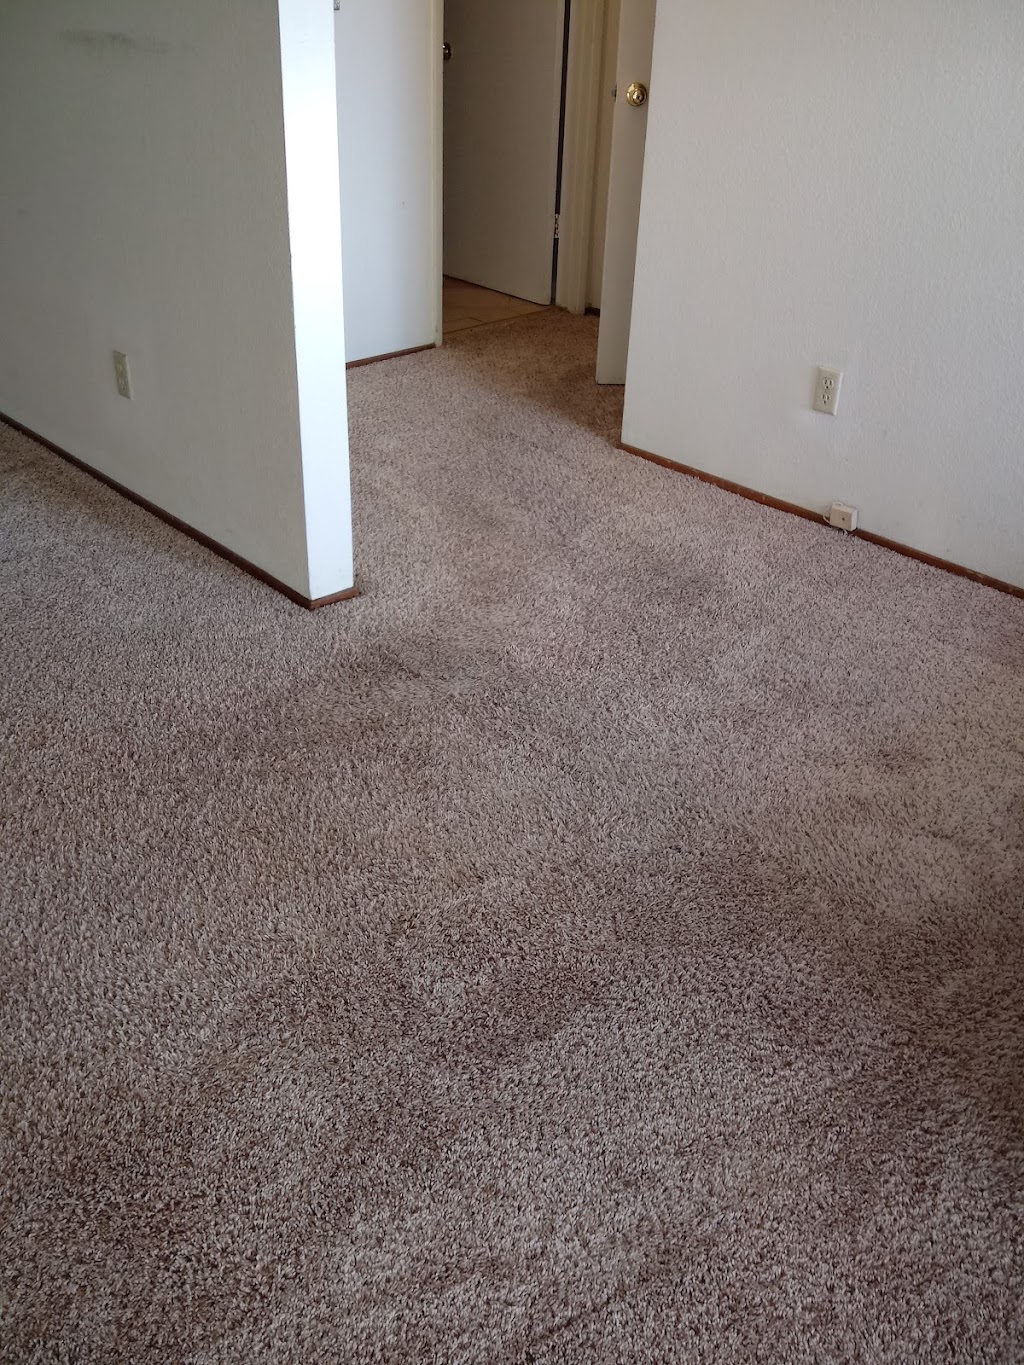 Carpet Cleaning Steam Clean | 31770 Alvarado Blvd, Union City, CA 94587 | Phone: (510) 585-1010